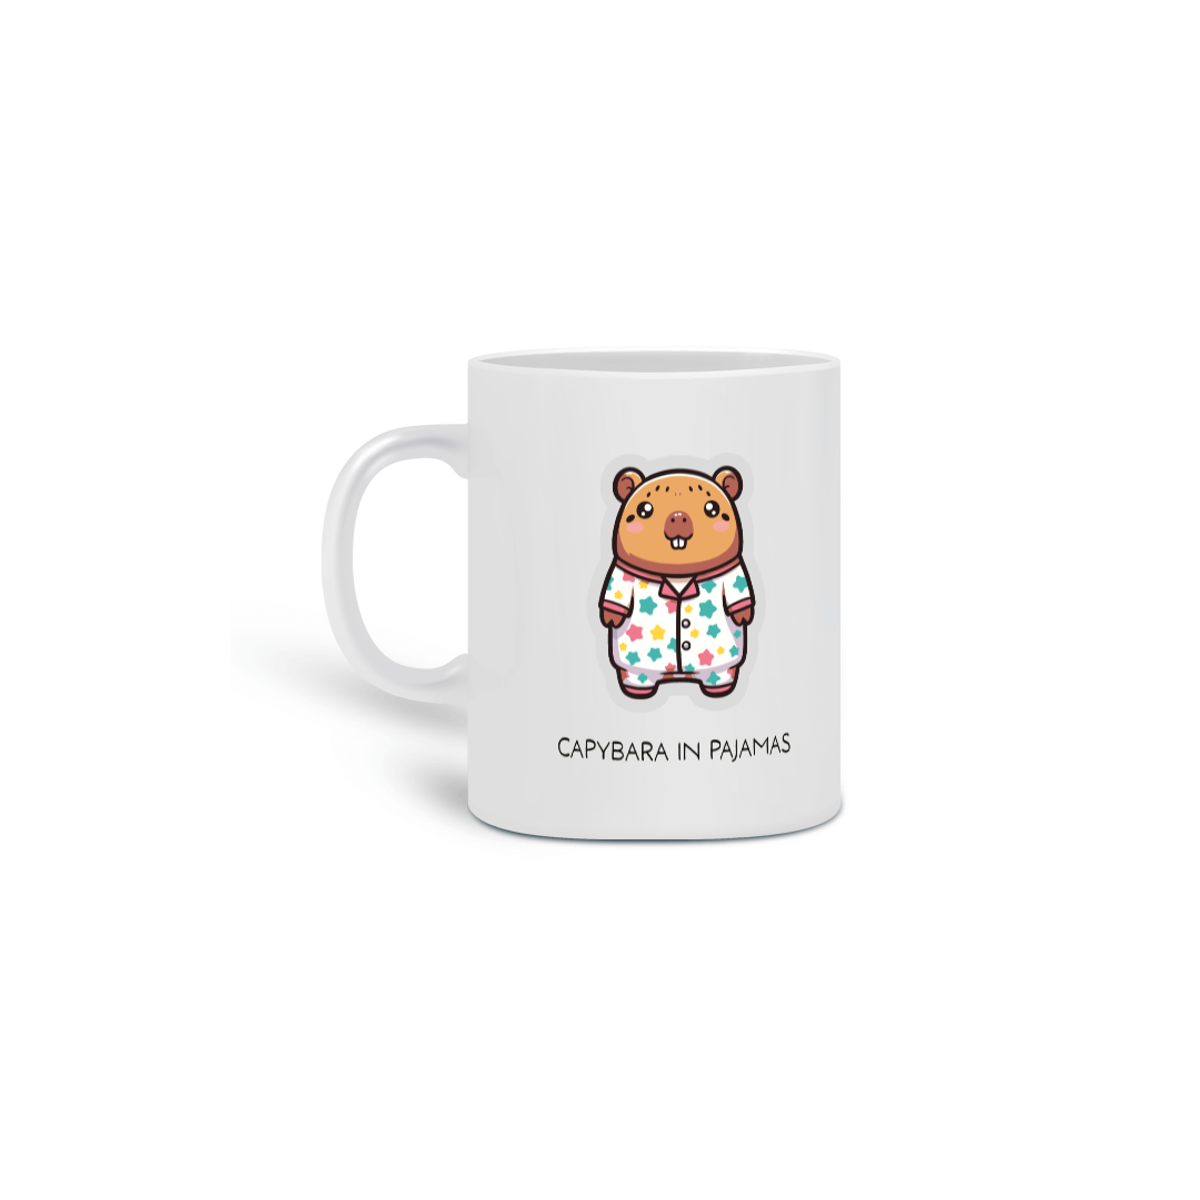 Nome do produto: Caneca - Capybara in Pajamas